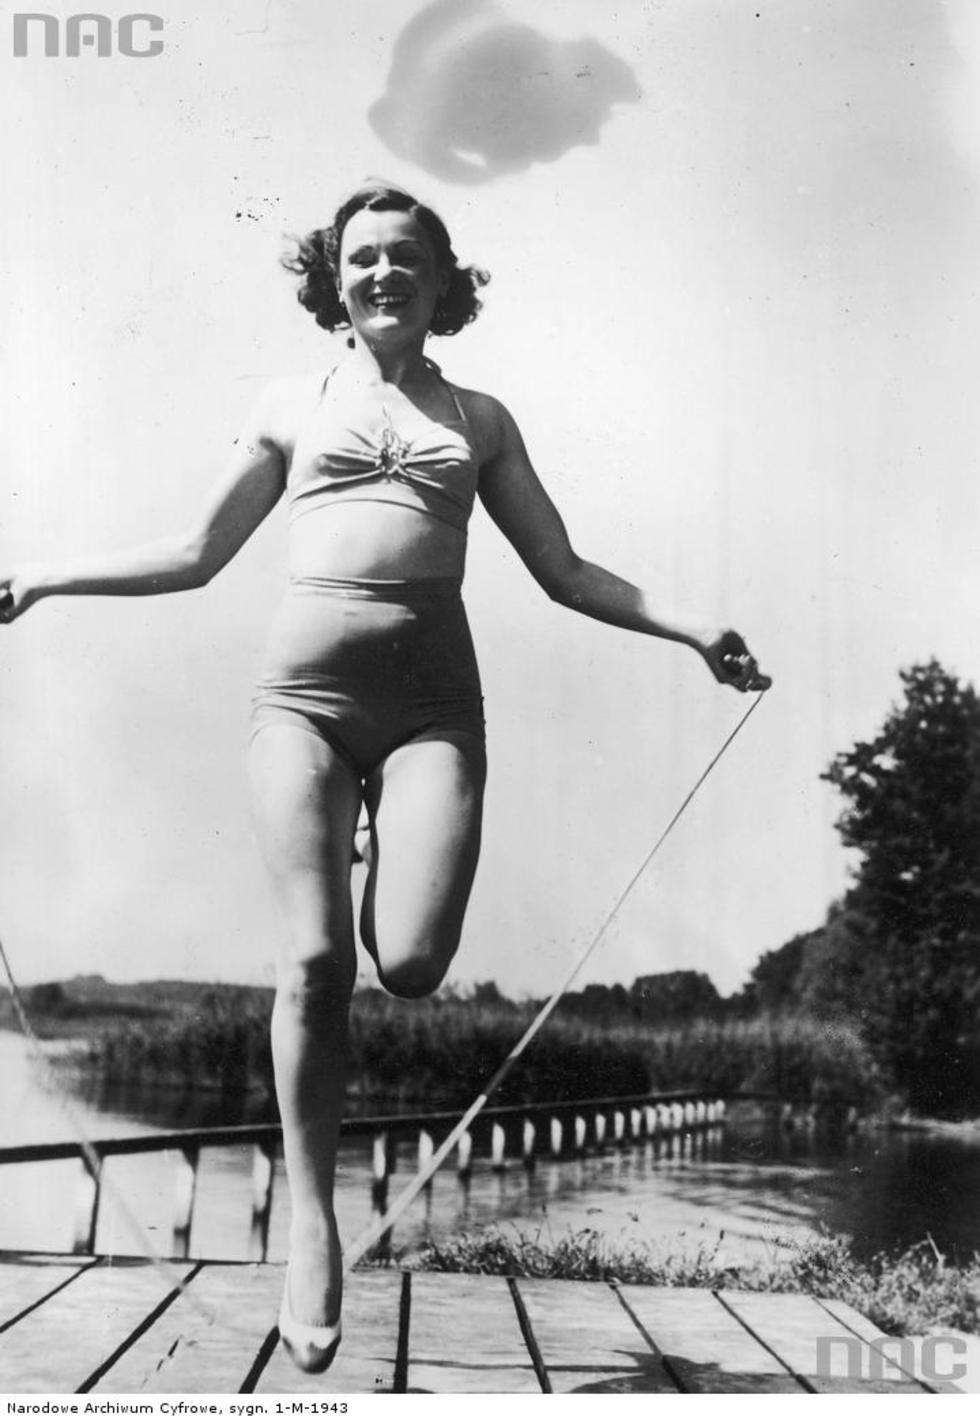  Aktorka Maria Andergast w kostiumie kąpielowym skacząca na skakance podczas wakacji nad jeziorem w nieznanym miejscu. 1939 r. Fot. <a href="http://www.audiovis.nac.gov.pl/obraz/184192/0a5a08ea8d783eb66d48481d17752e5d/">NAC</a>